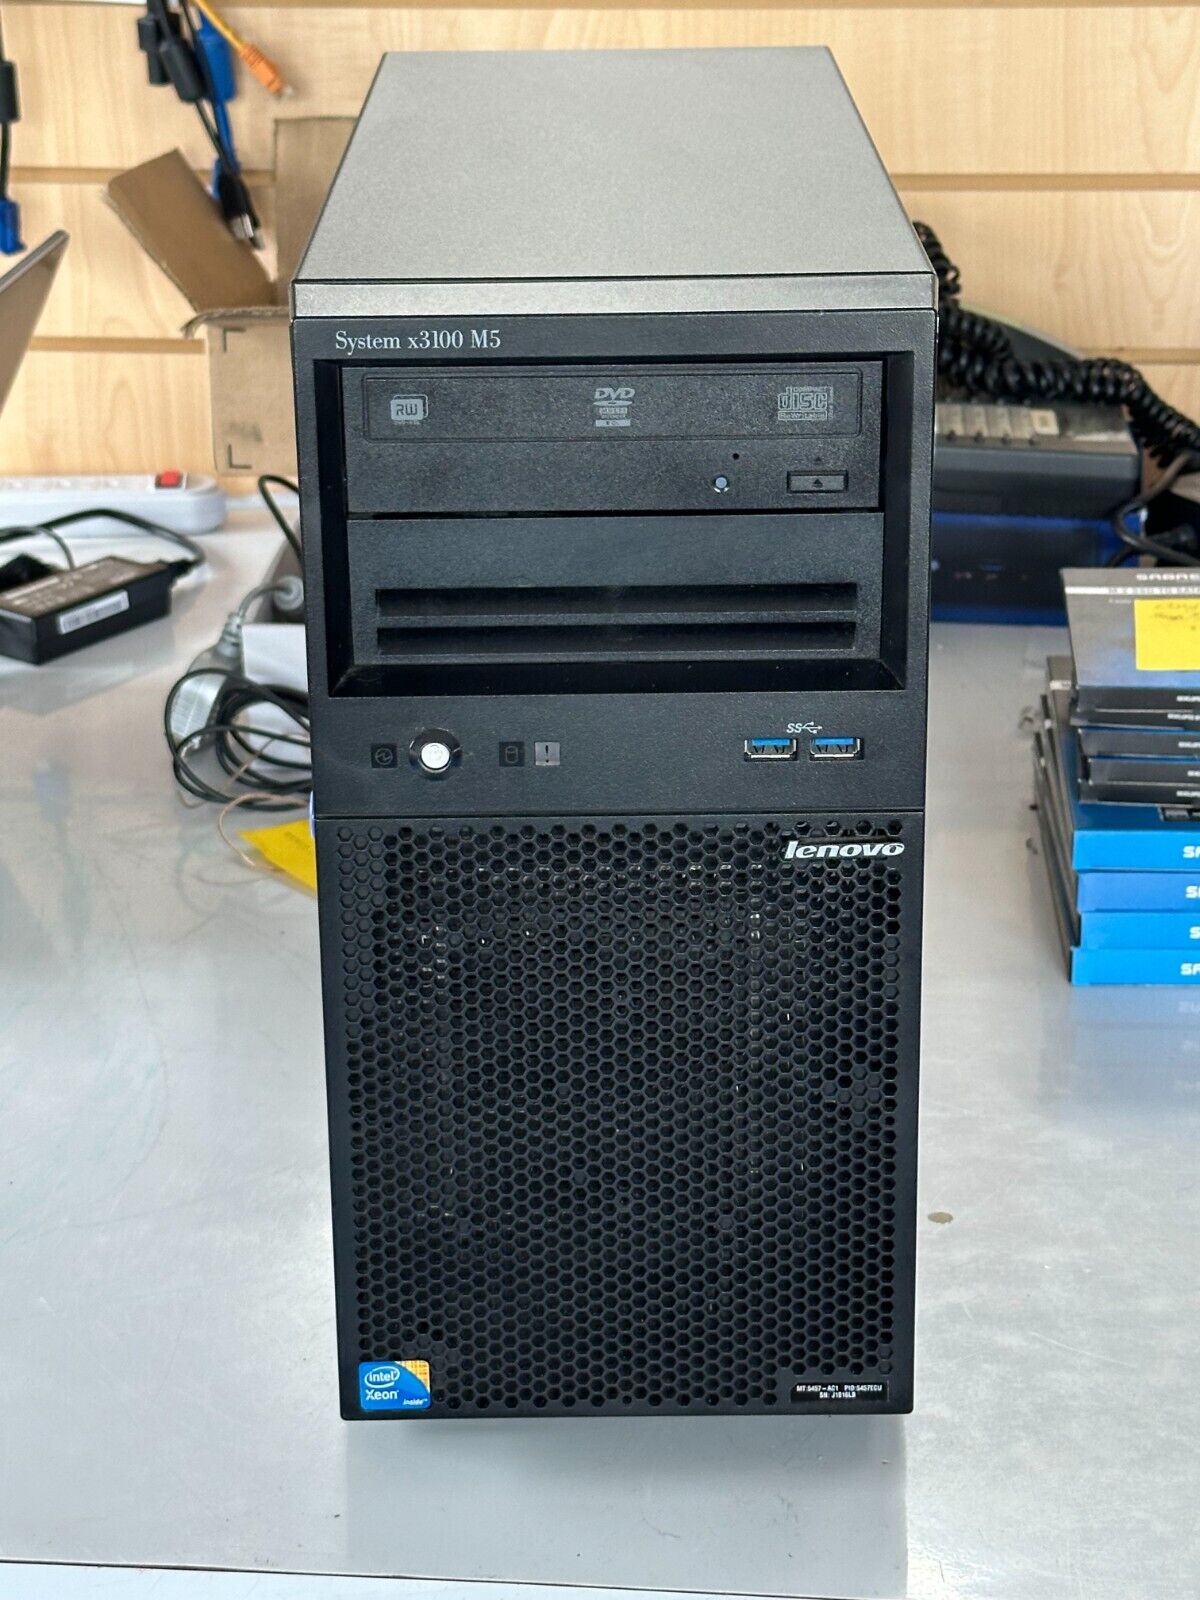 Lenovo System x3100 M5 5457-AC1 Intel Xeon E3 3.40GHz 8GB RAM No HDD